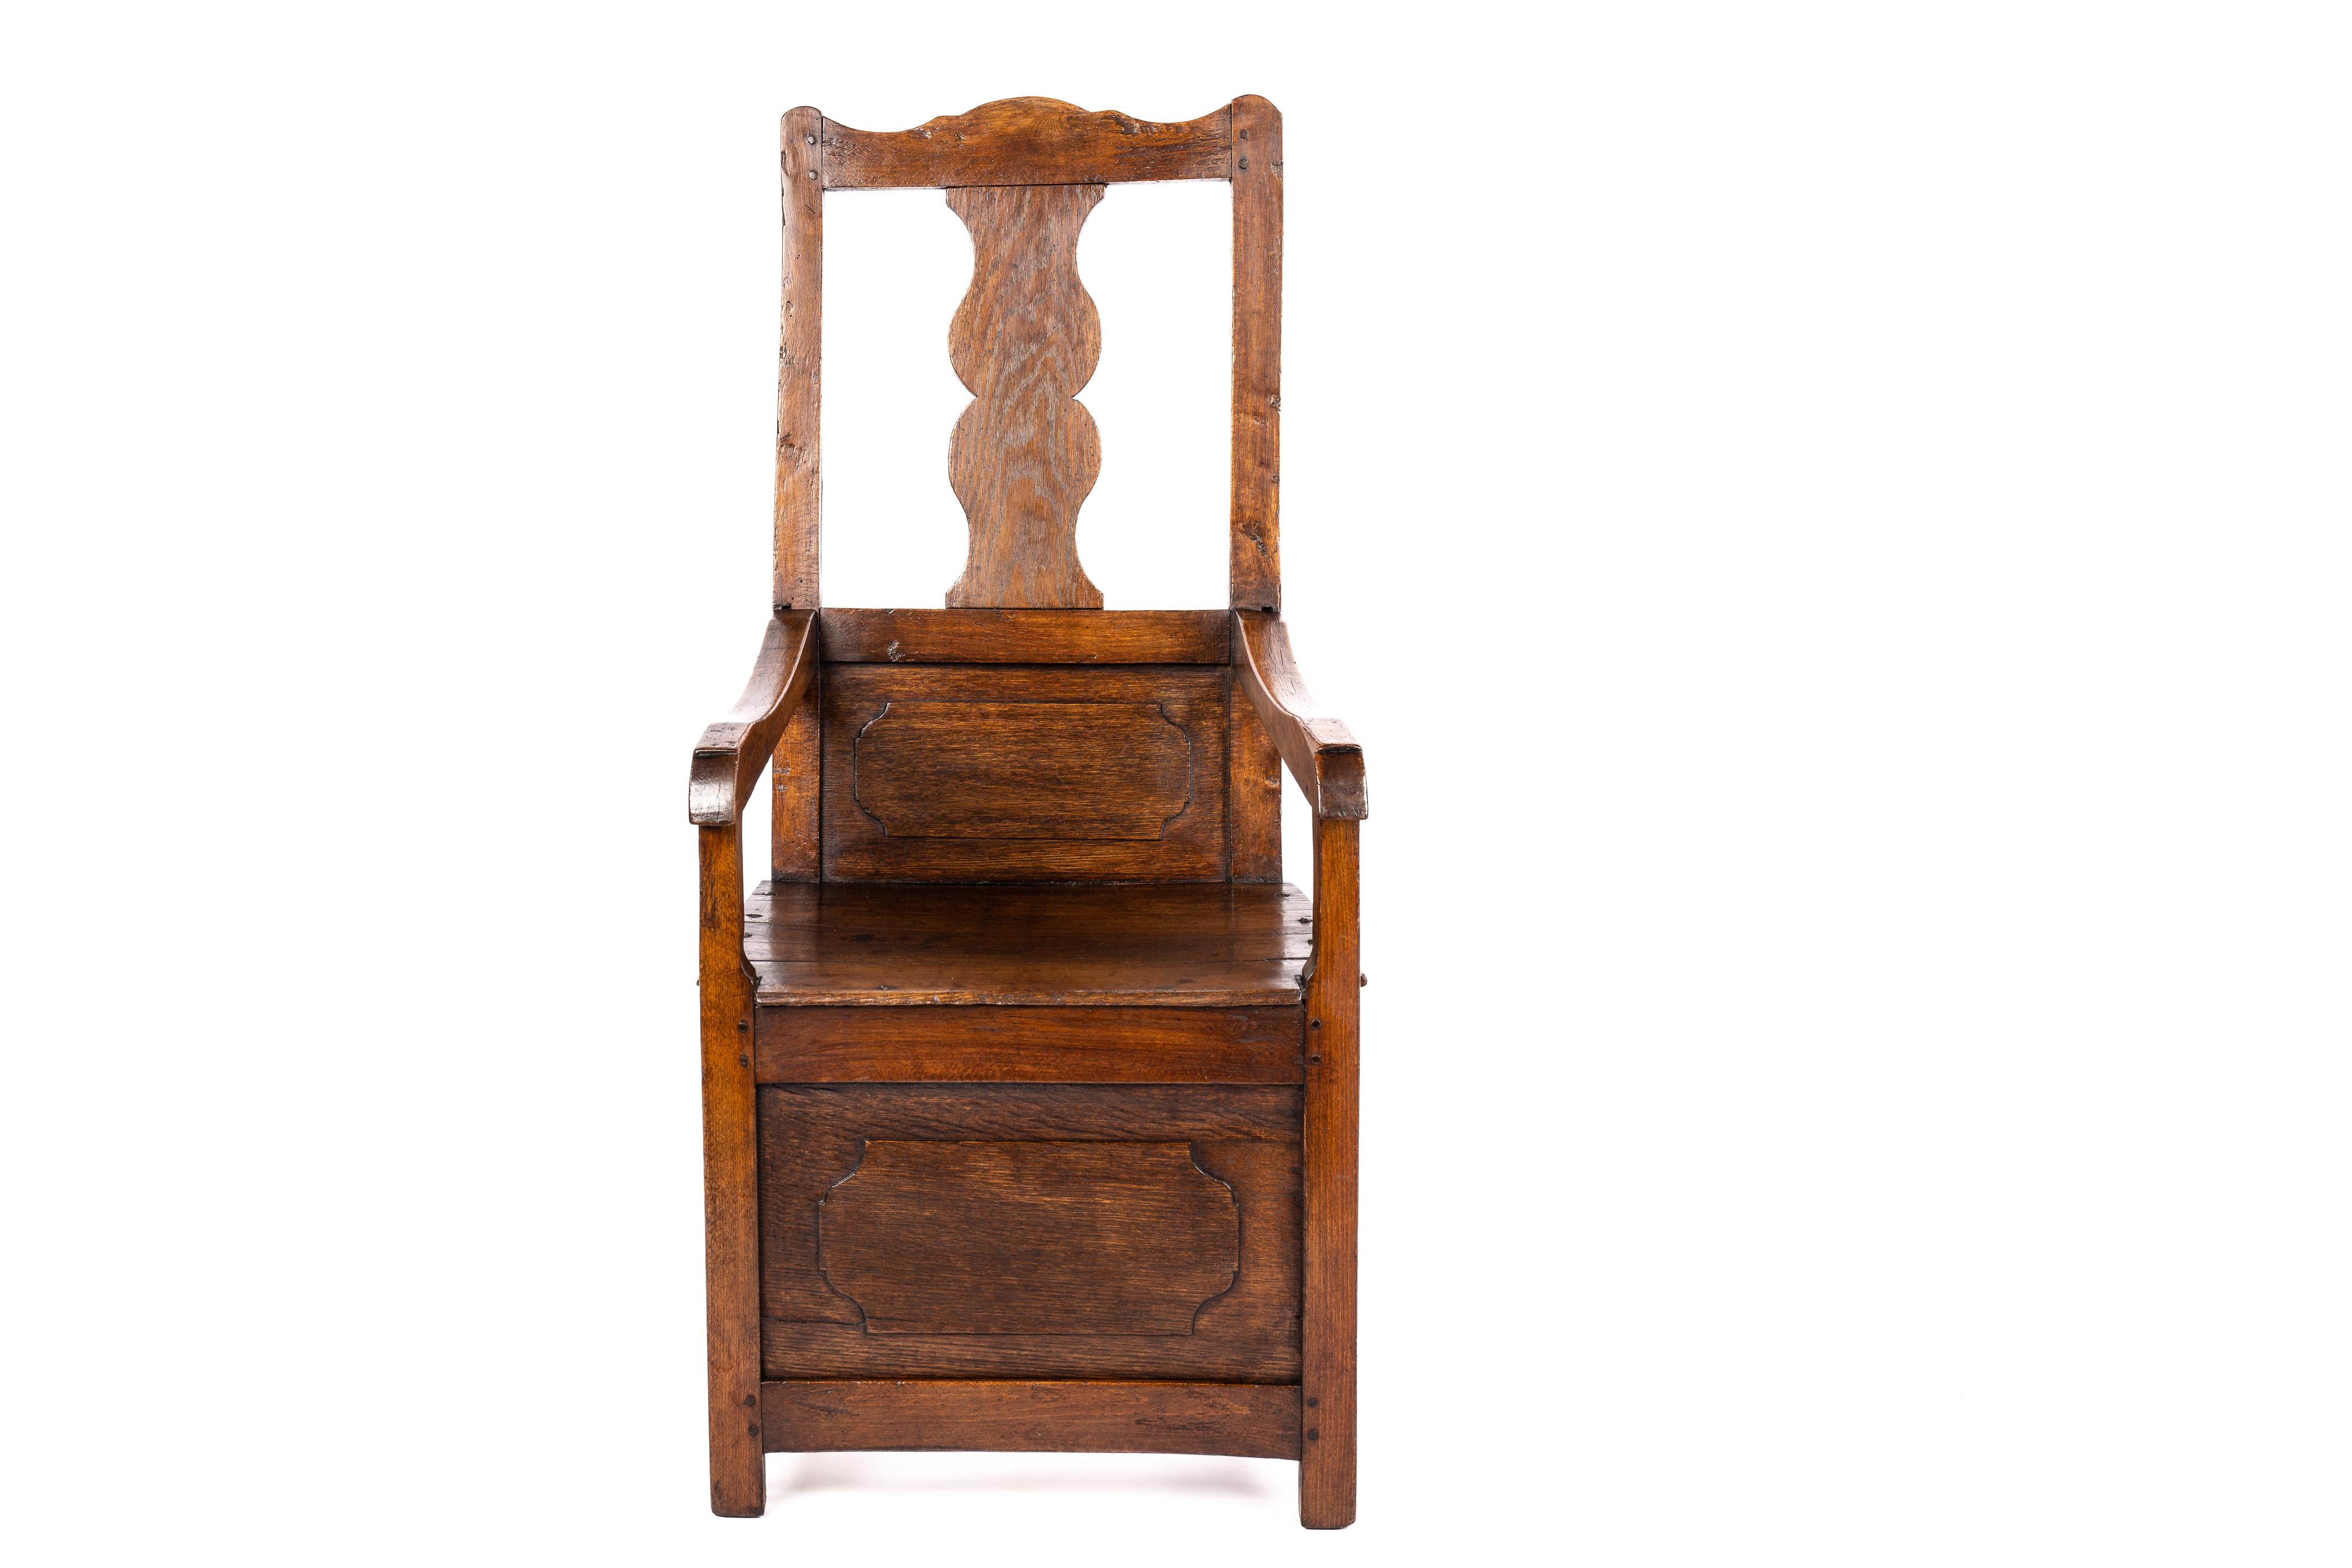 Nous vous proposons ici un magnifique fauteuil ancien, véritable témoignage d'une beauté et d'un savoir-faire intemporels. Cette pièce remarquable est dotée de larges accoudoirs et d'un dossier et d'une façade lambrissés, ce qui en fait un bel